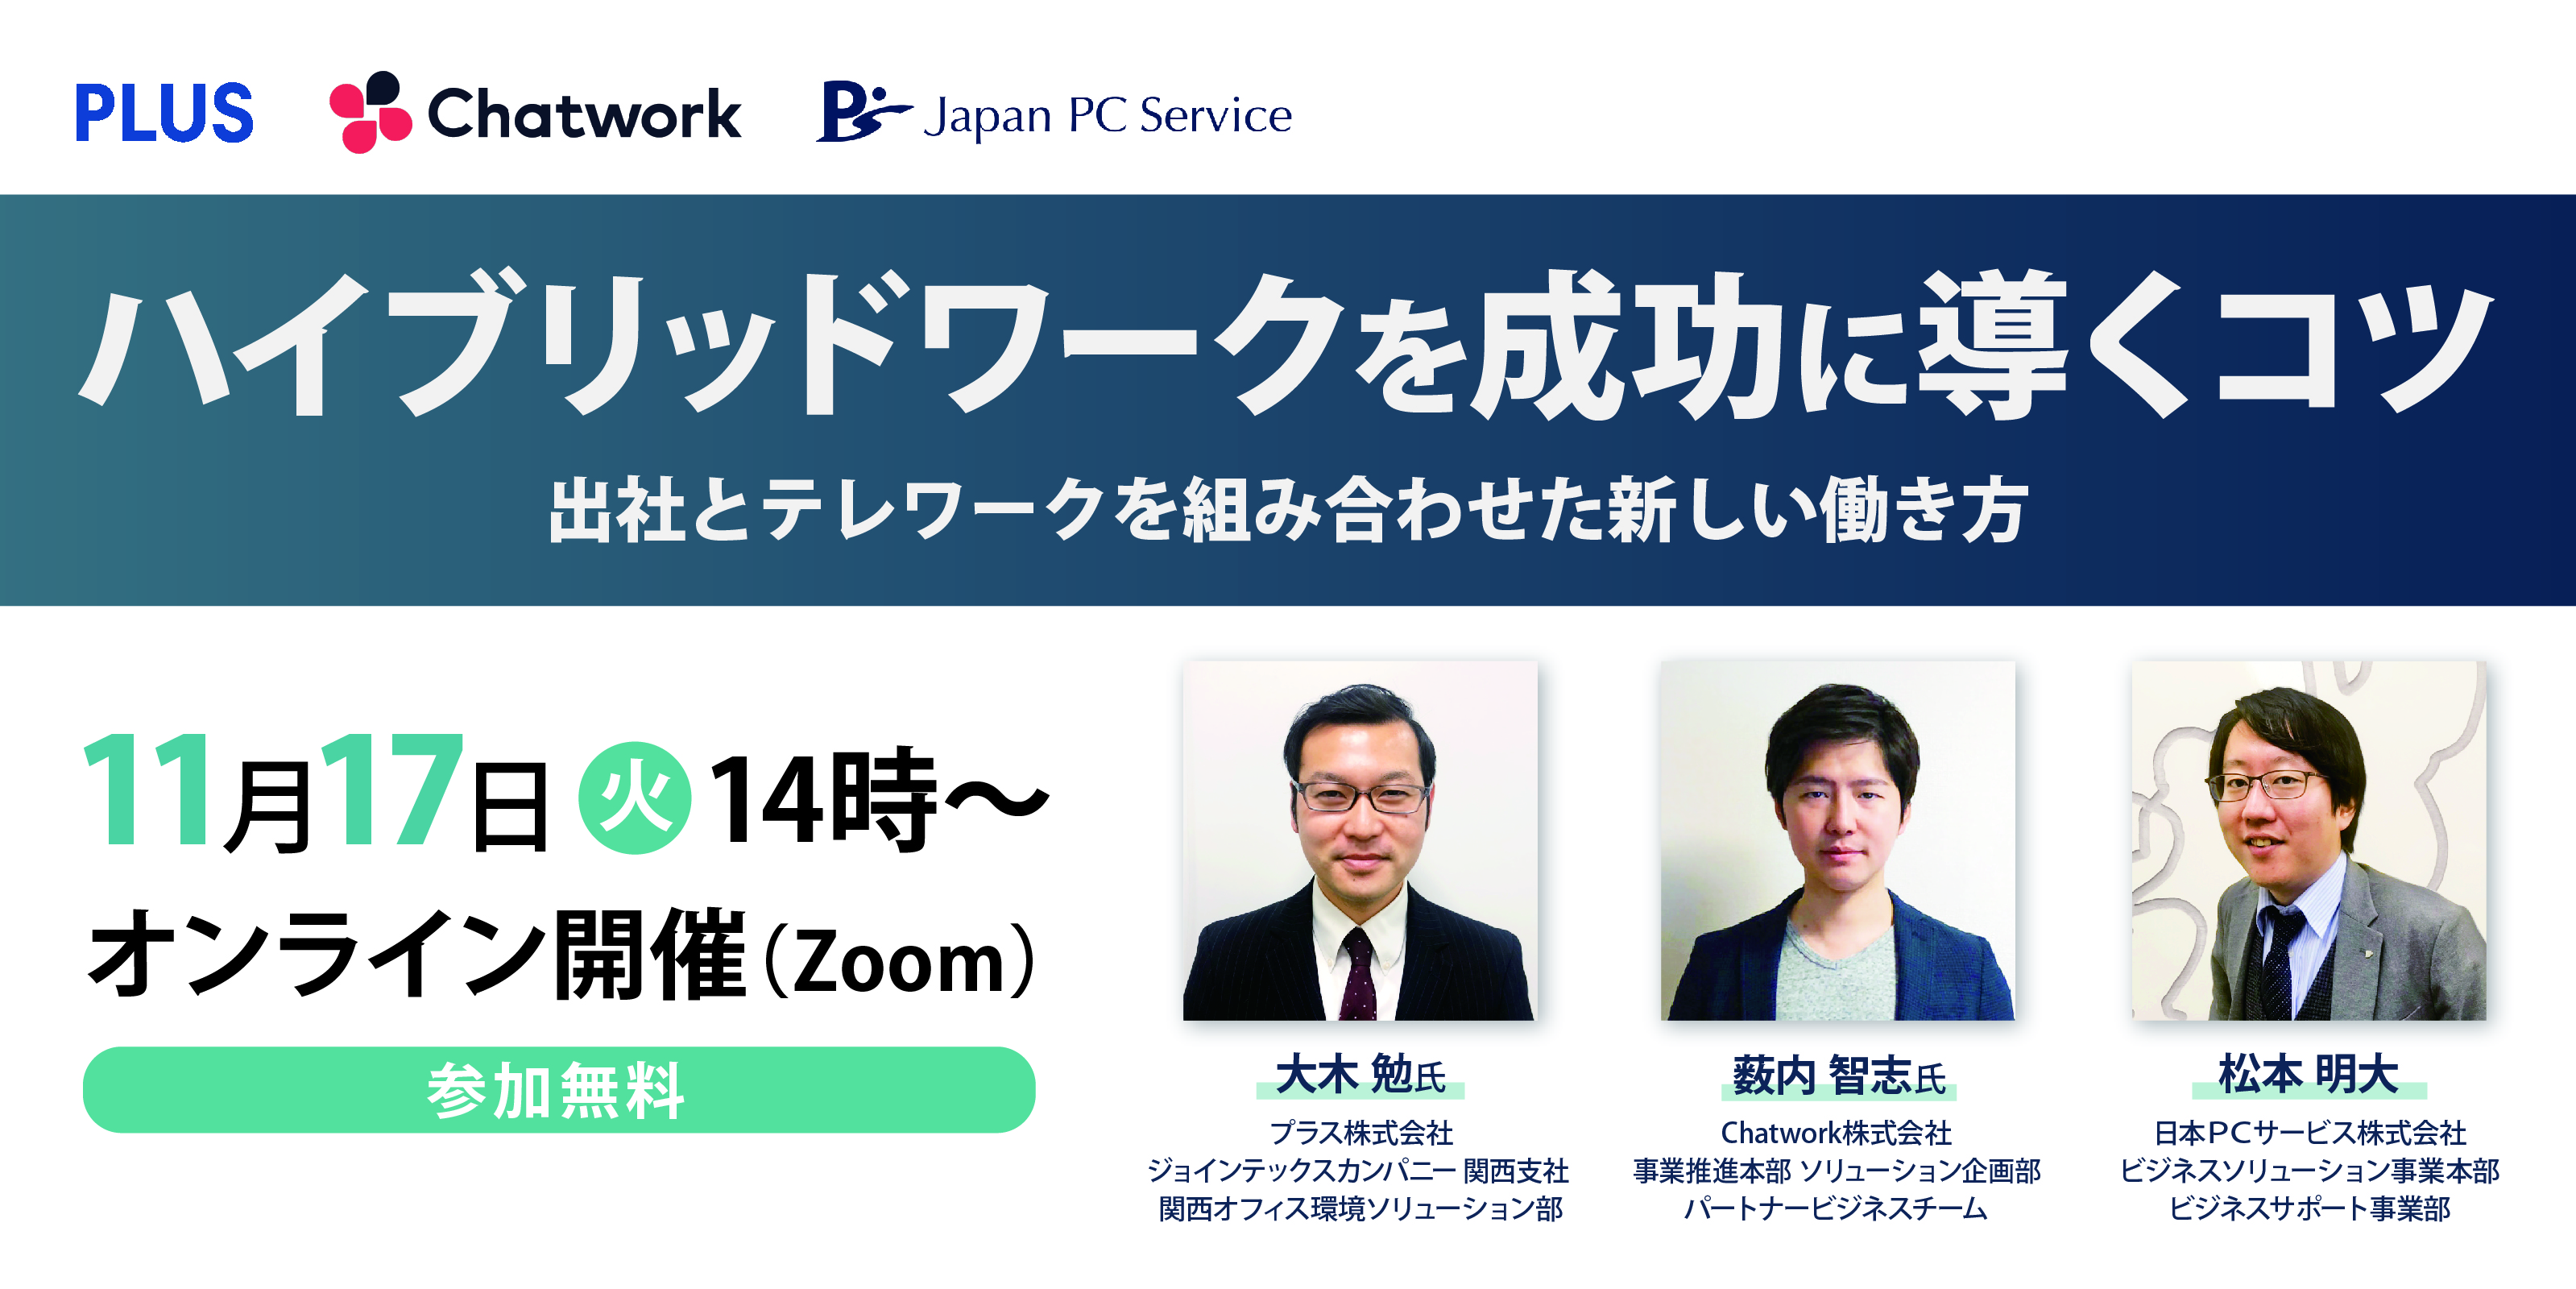 日本ＰＣサービス×プラス×Chatworkが 無料オンラインセミナーを合同開催